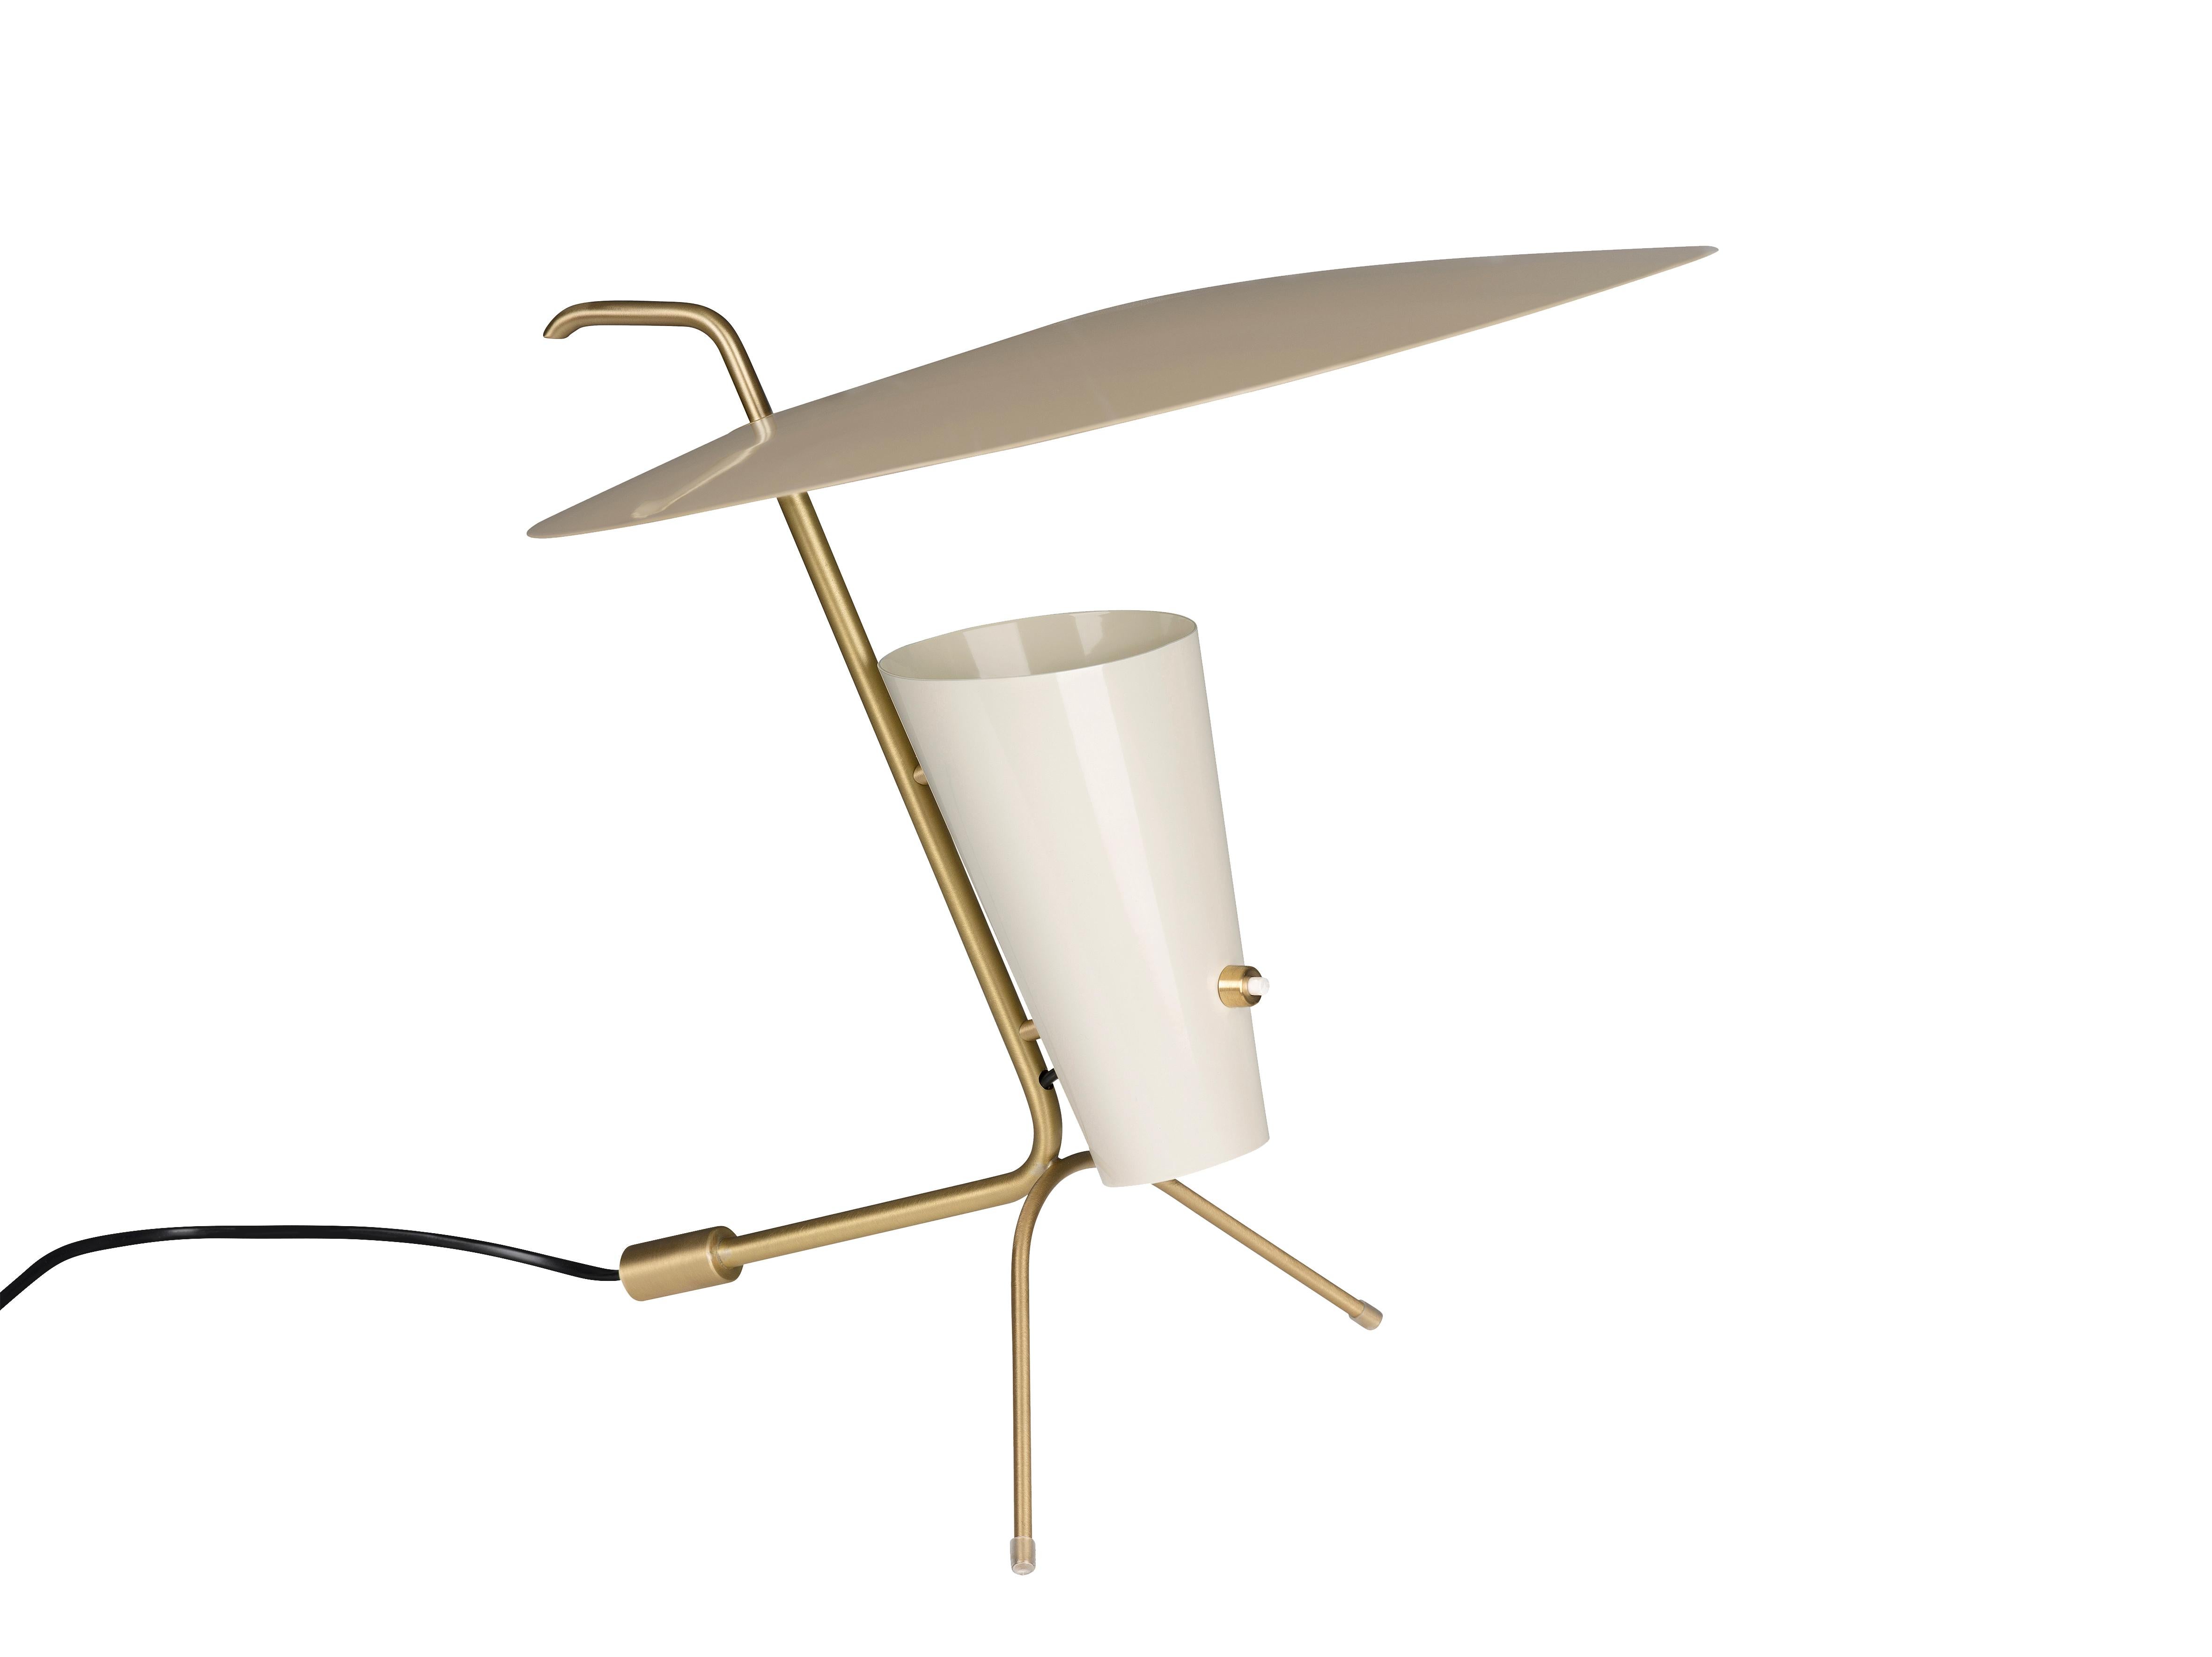 Lampe de table G24 de Pierre Guariche en sable et blanc pour Sammode Studio. 

Conçue à l'origine par Pierre Guariche en 1953, cette lampe emblématique fait l'objet d'une réédition autorisée par Sammode Studio en France, qui utilise les mêmes